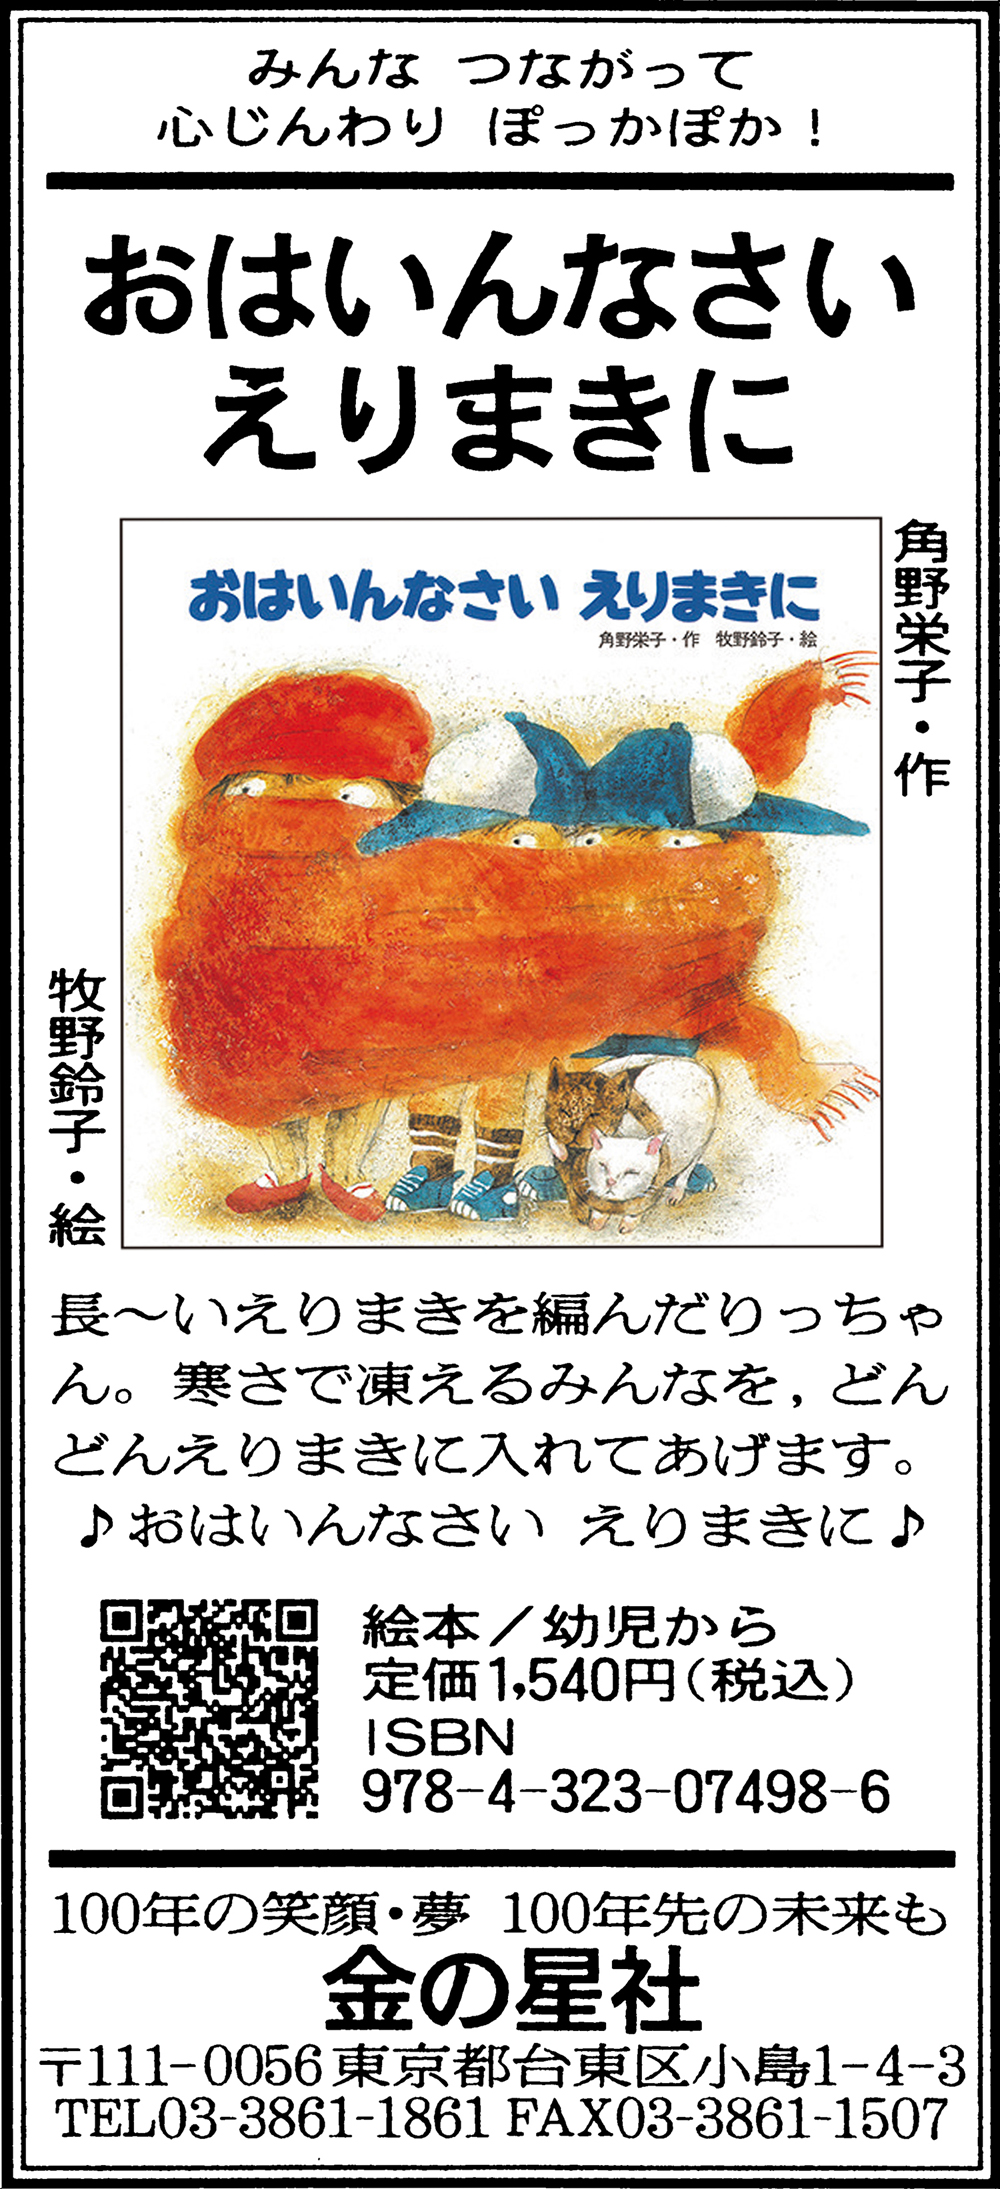 1/13（木）朝日新聞『おはいんなさい えりまきに』広告掲載